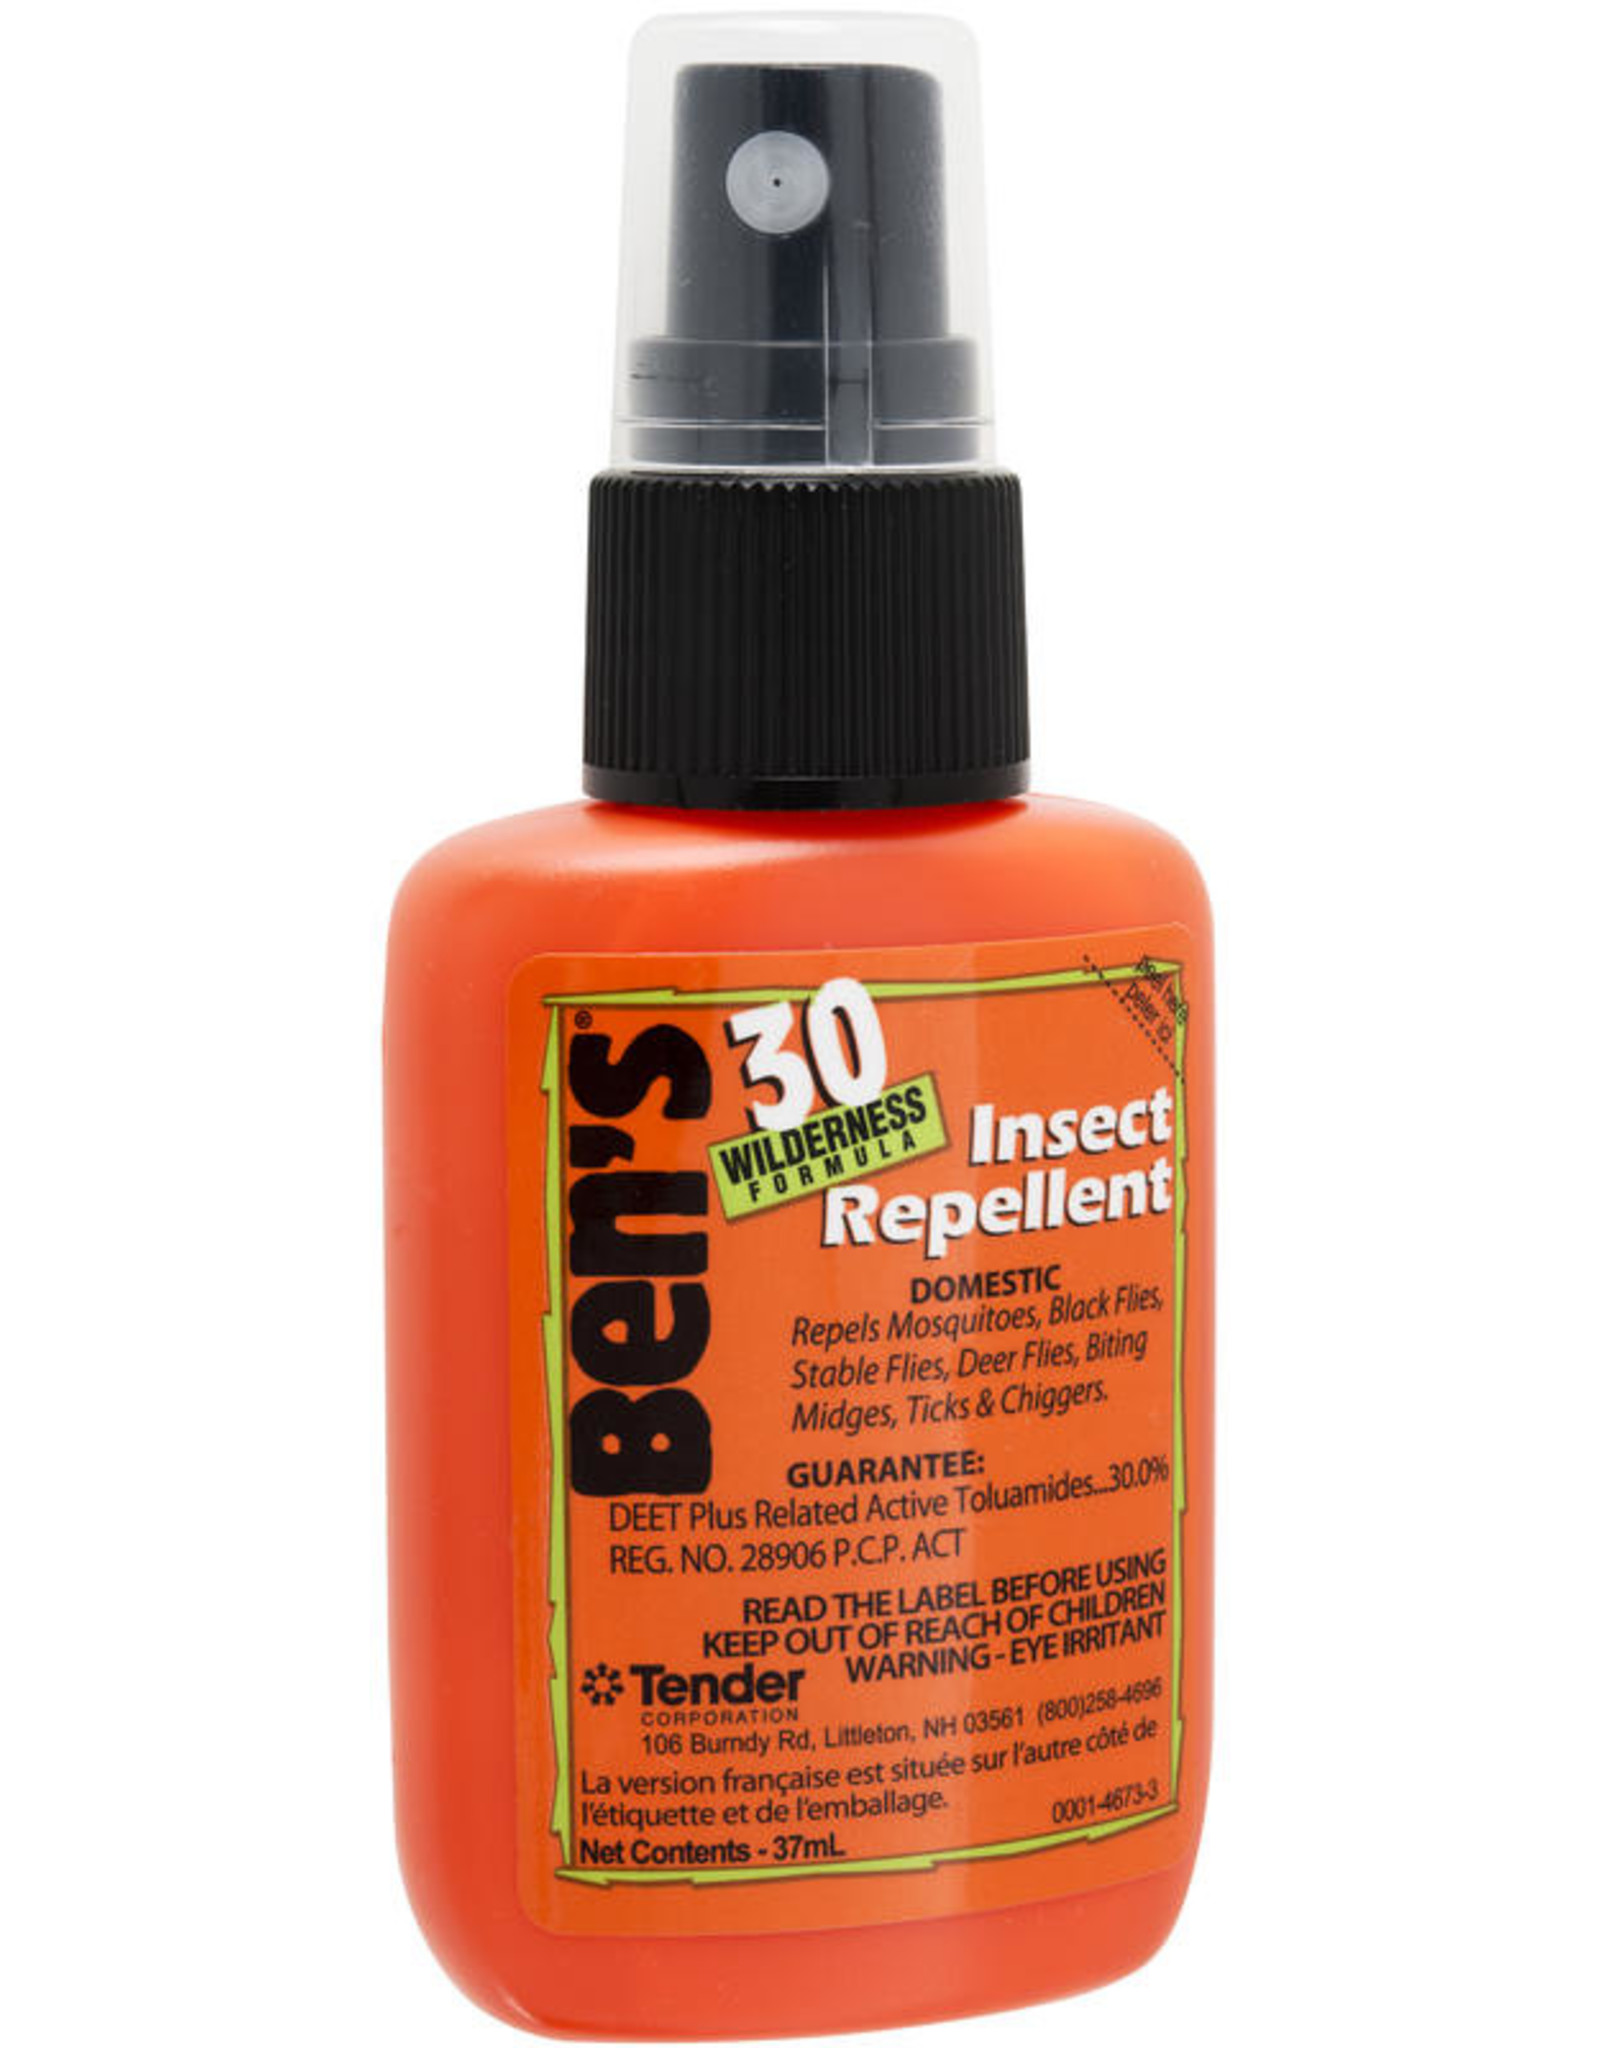 Ben's Insect Repellent 37ml